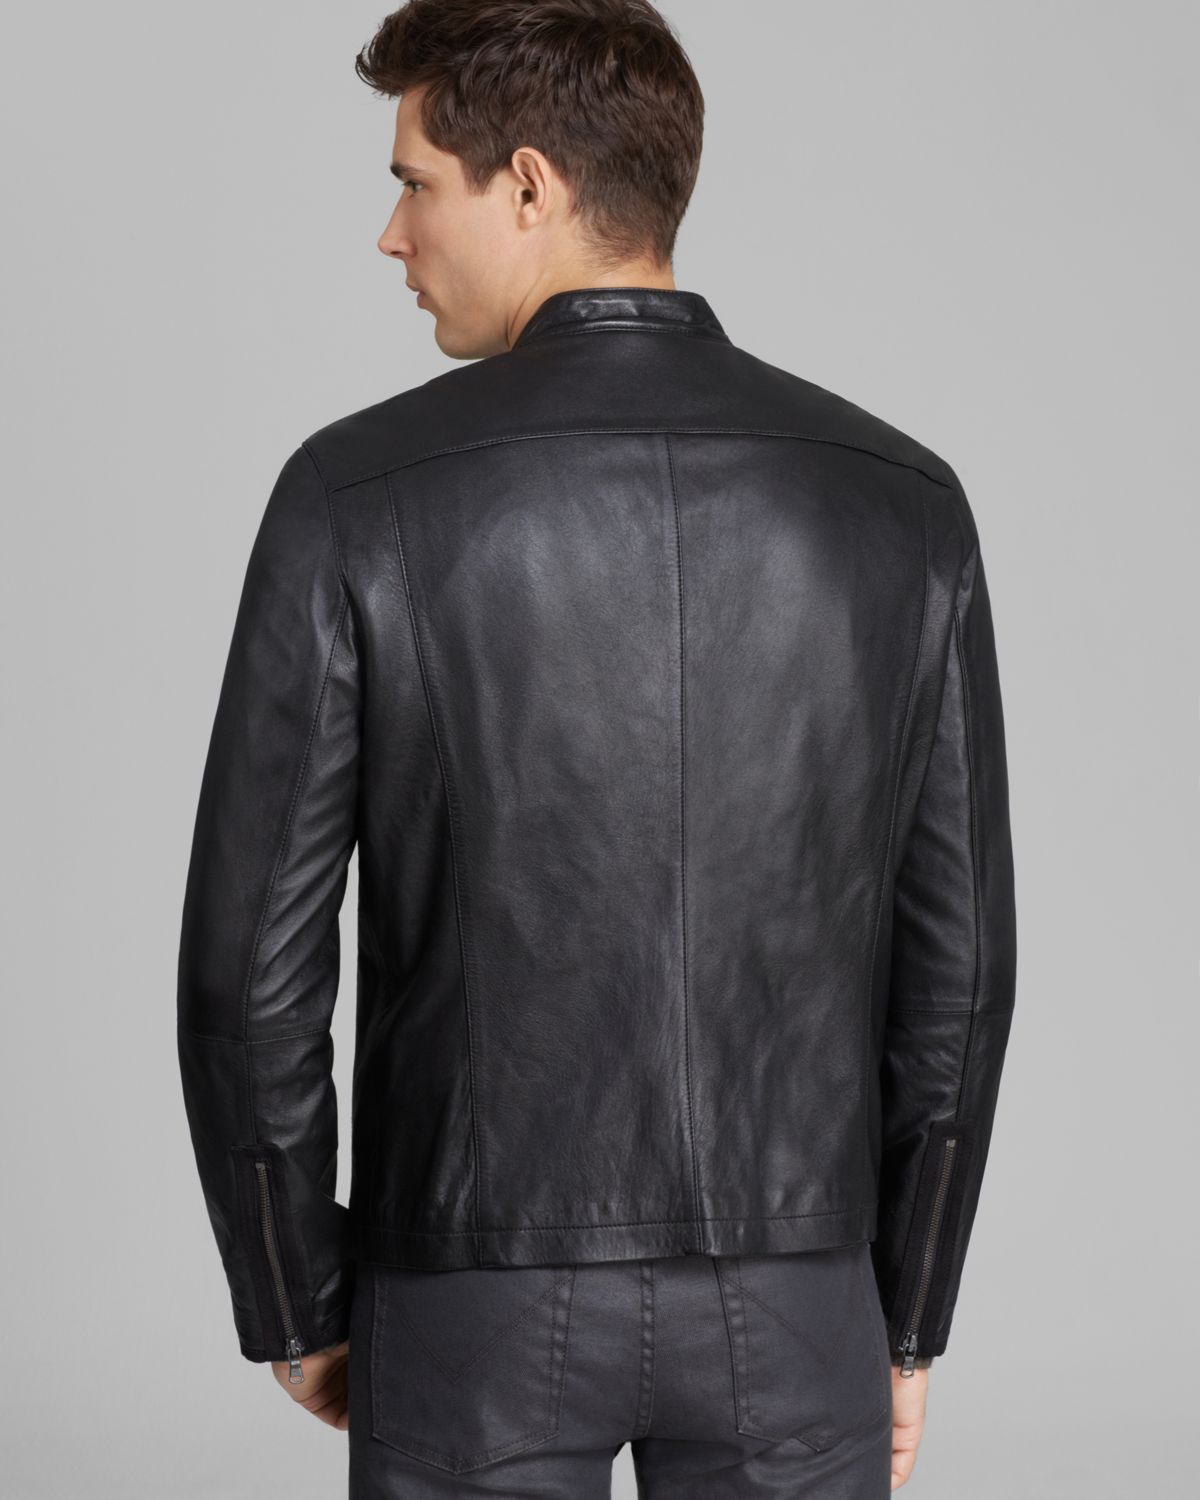 John Varvatos Usa Denimstyle Leather Jacket in Black for Men - Lyst